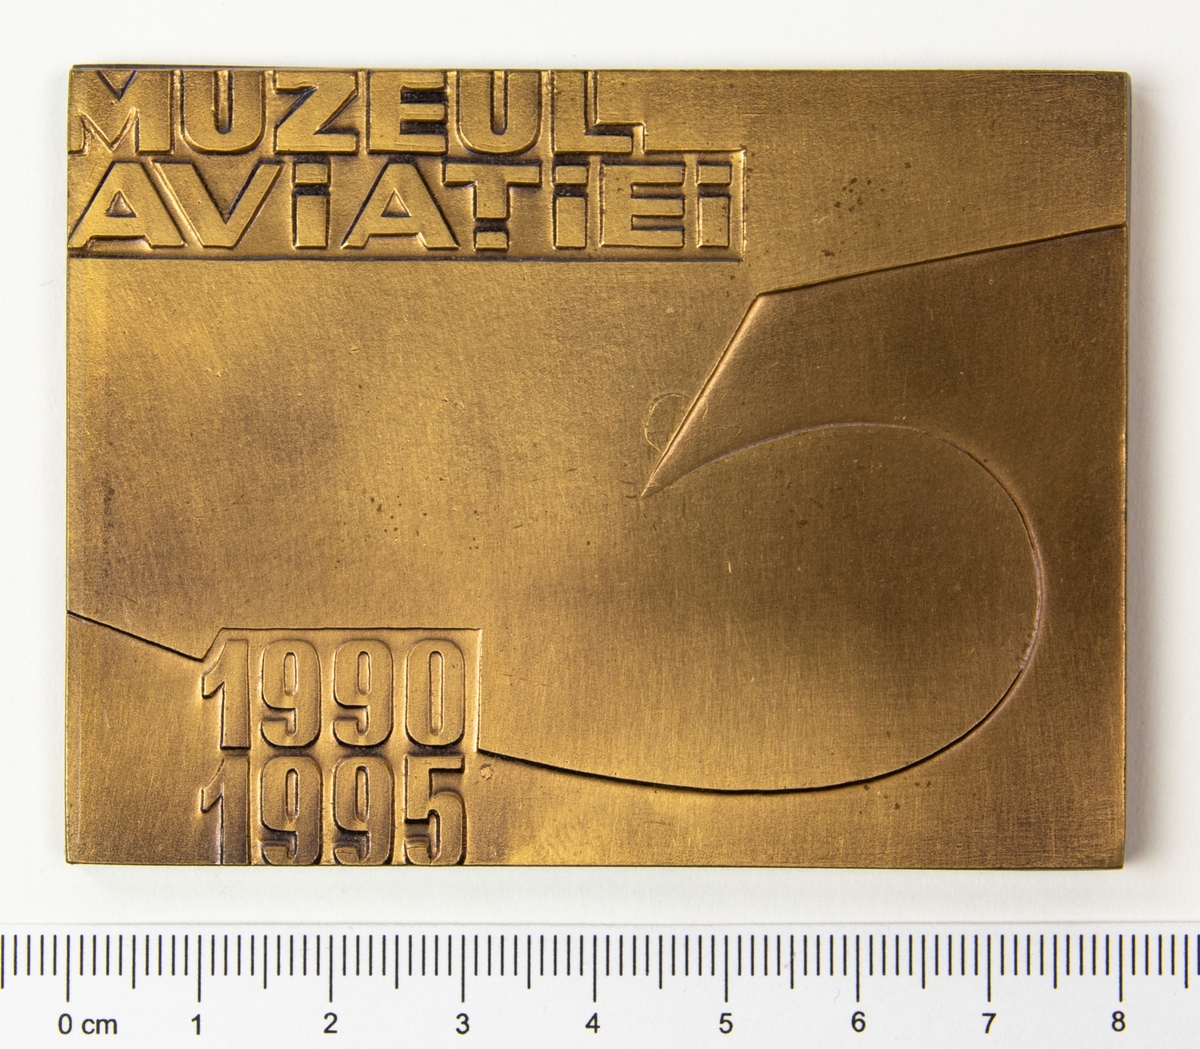 Minnesplakett med motiv av en örn med en sköld på bröstet och texten MAV, årtalen 1990 och 1995 på framsidan. På frånsidan texten Muzeul Aviatiei. Plaketten förvaras i en brun ask.